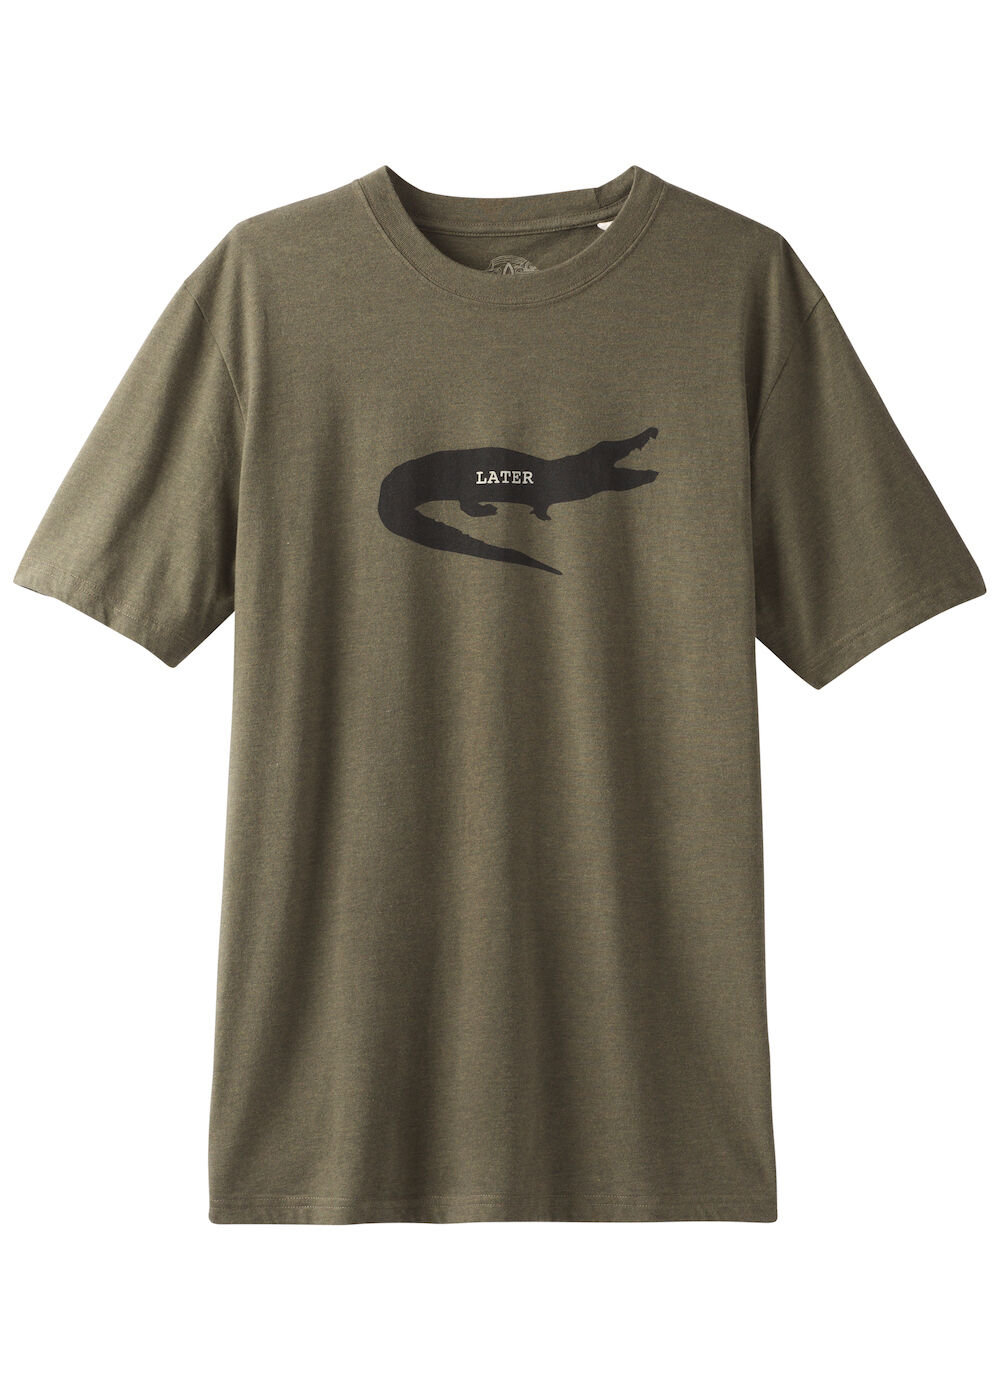 Prana Later Gator Journeyman - T-shirt - Heren